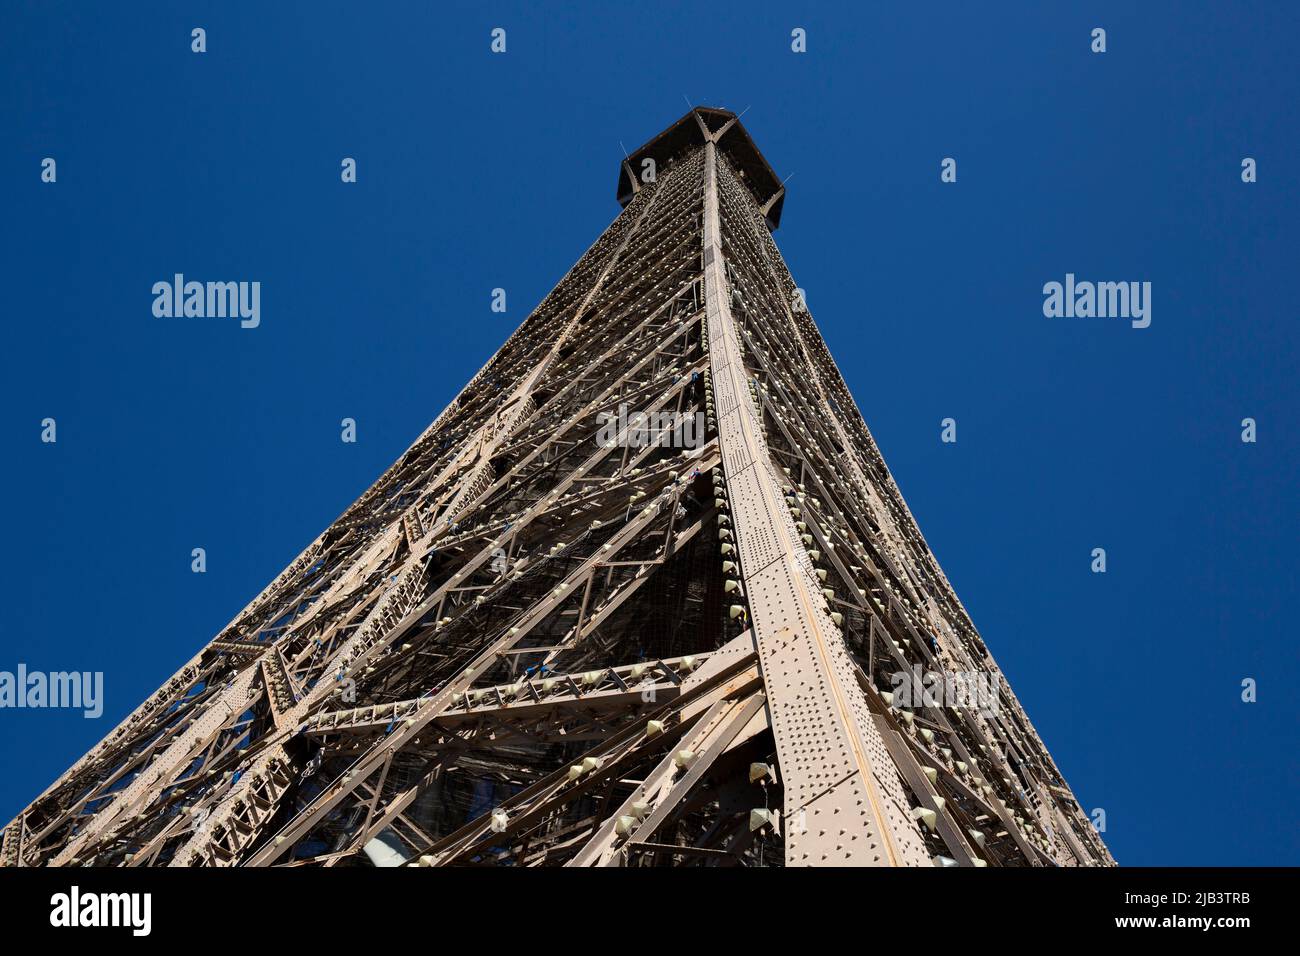 La Torre Eiffel en París, Francia, el 28 de febrero de 2022. La Torre Eiffel (Tour Eiffel en francés) es una torre de celosía de hierro forjado en el Campo de Marte en París. Lleva el nombre del ingeniero Gustave Eiffel, cuya empresa diseñó y construyó la torre. La Torre Eiffel se ha convertido en un icono cultural global de Francia y una de las estructuras más reconocibles del mundo. Fotografía de Bénédicte Desrus Foto de stock